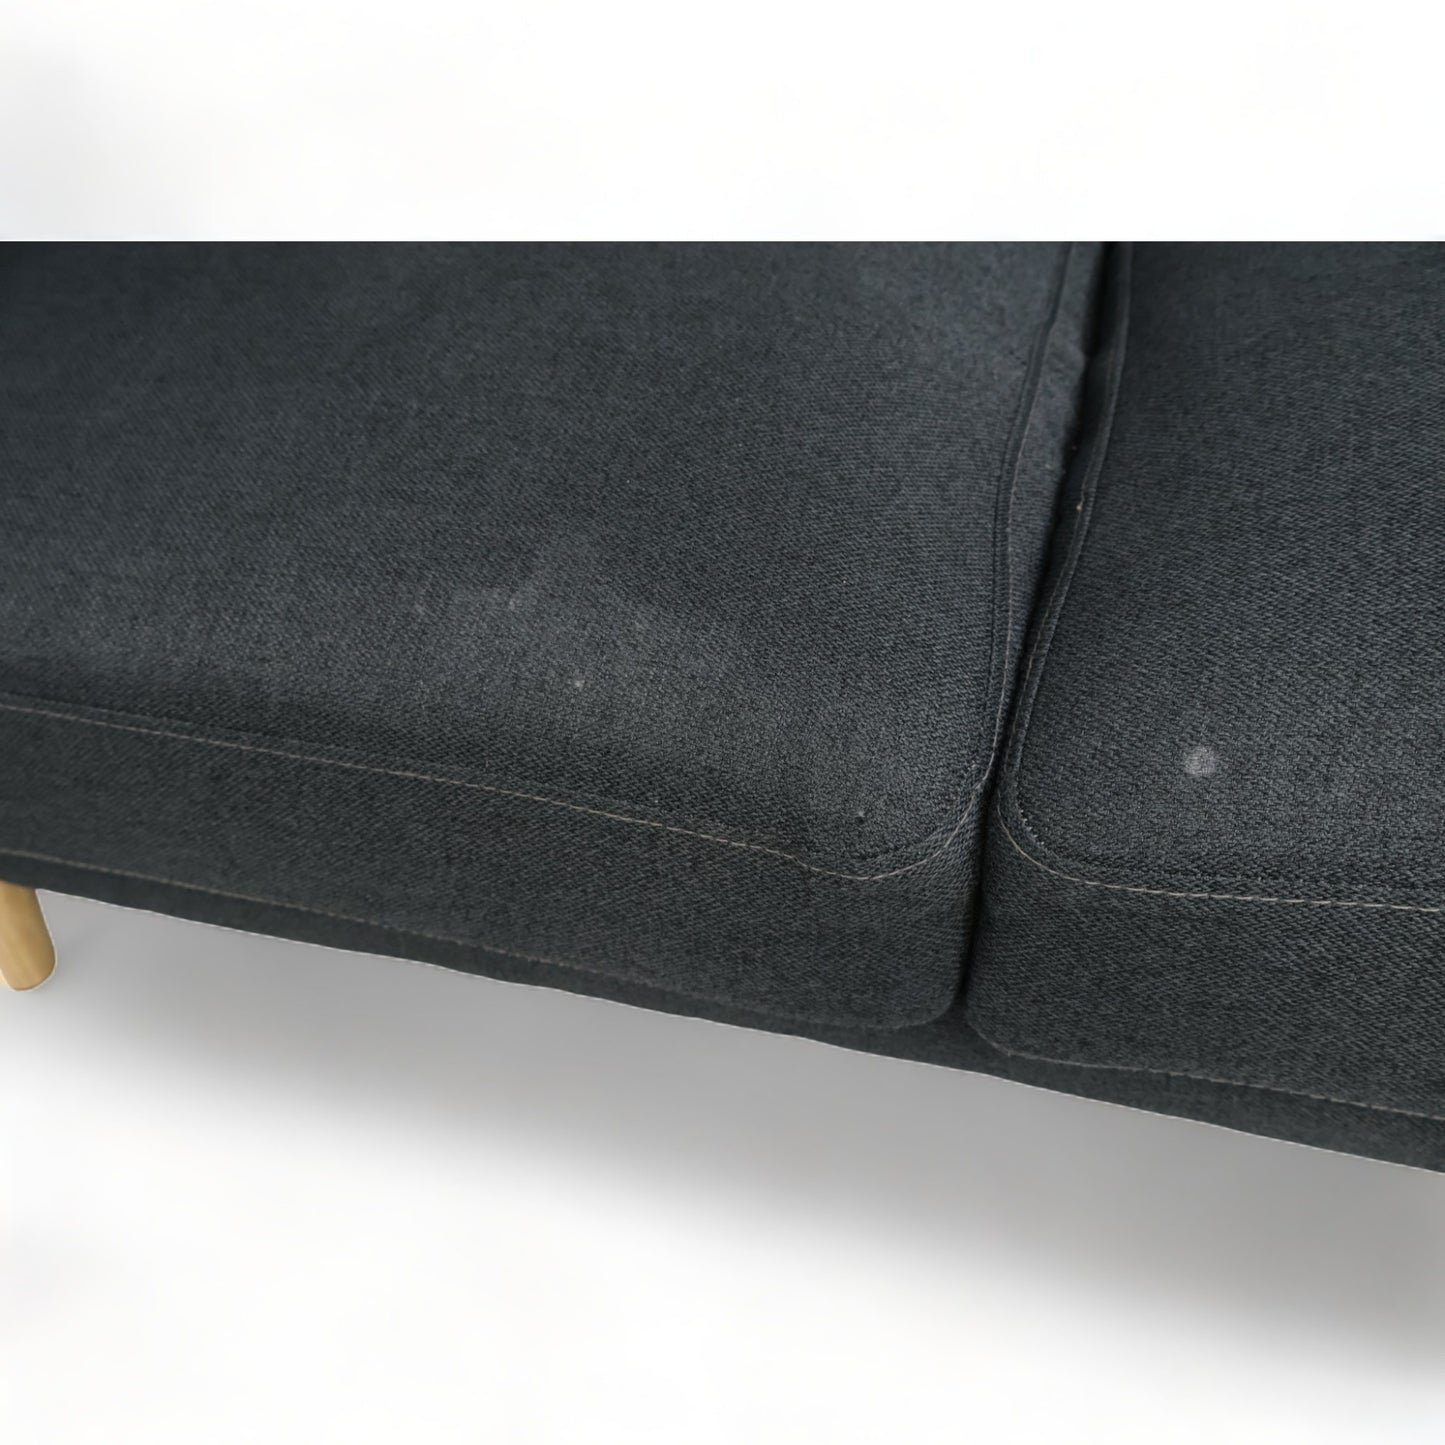 Nyrenset | Mørk grå Stella 2-seter sofa